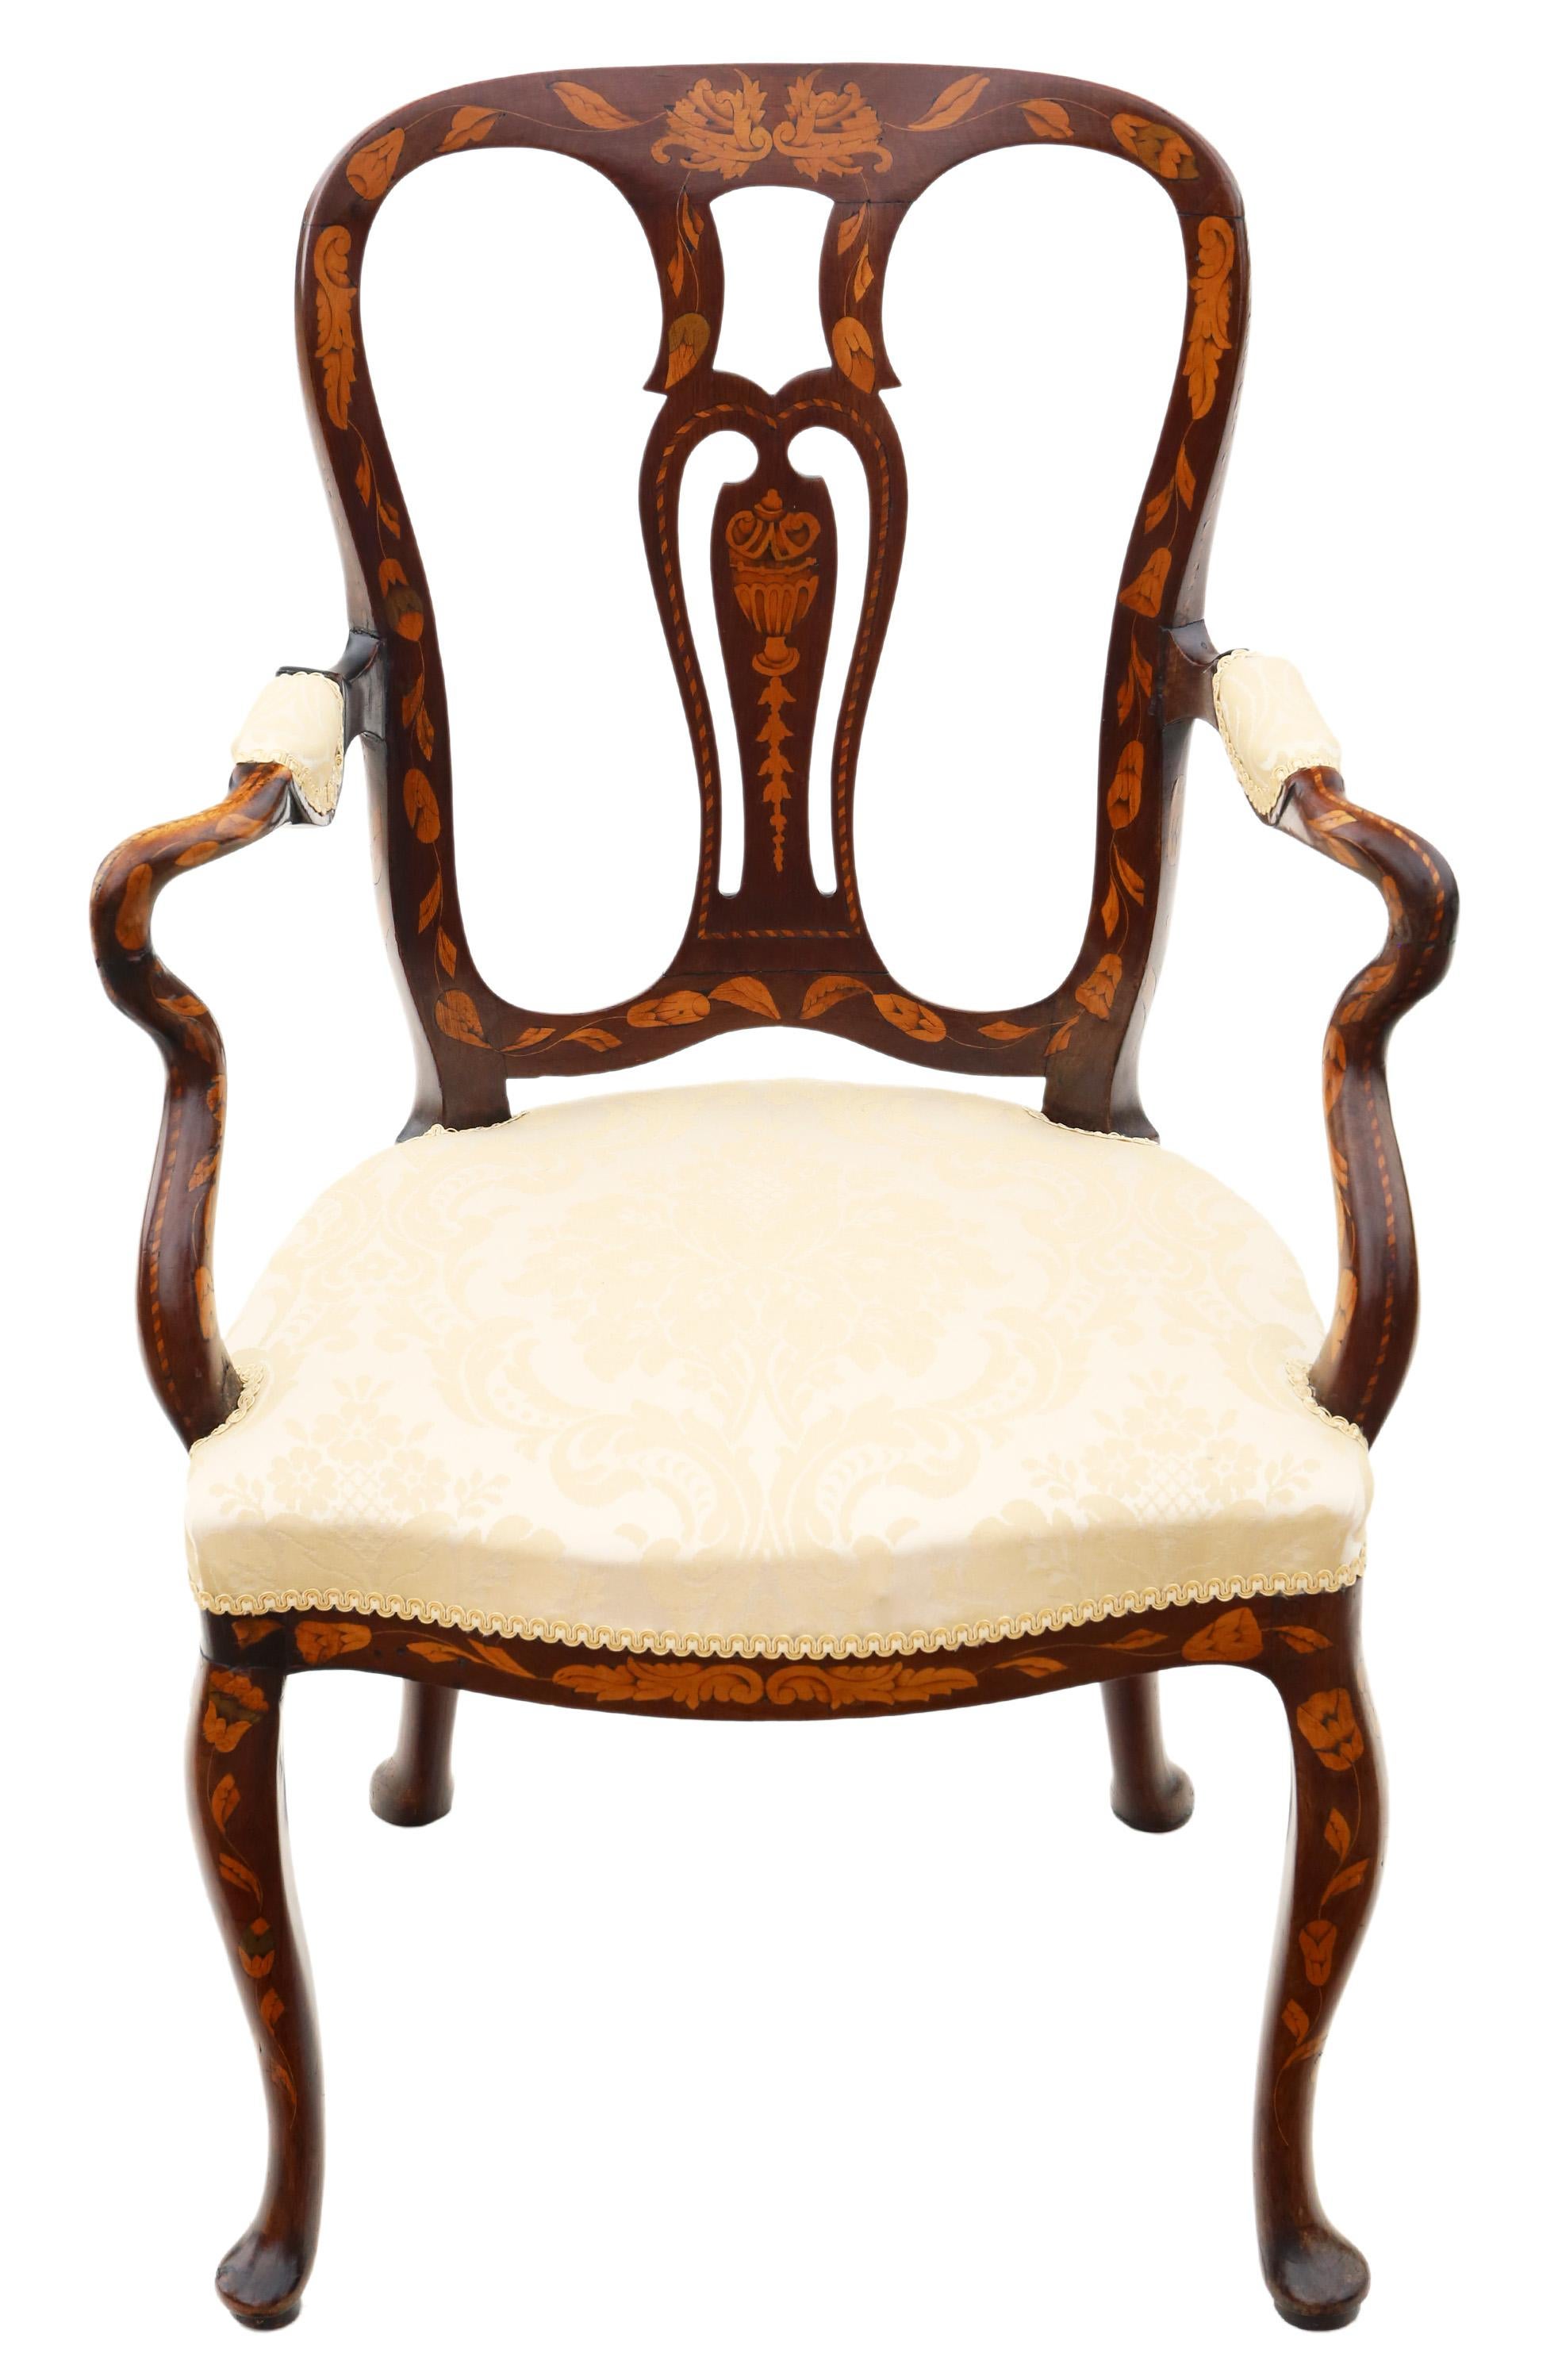 Ancienne chaise de bureau ou à bras coudé en marqueterie hollandaise du 18ème siècle de très belle qualité. Peut également être utilisé comme chaise d'appoint, de salle ou de carver... Marqueterie et sculpture exceptionnelles.

Solides et forts,